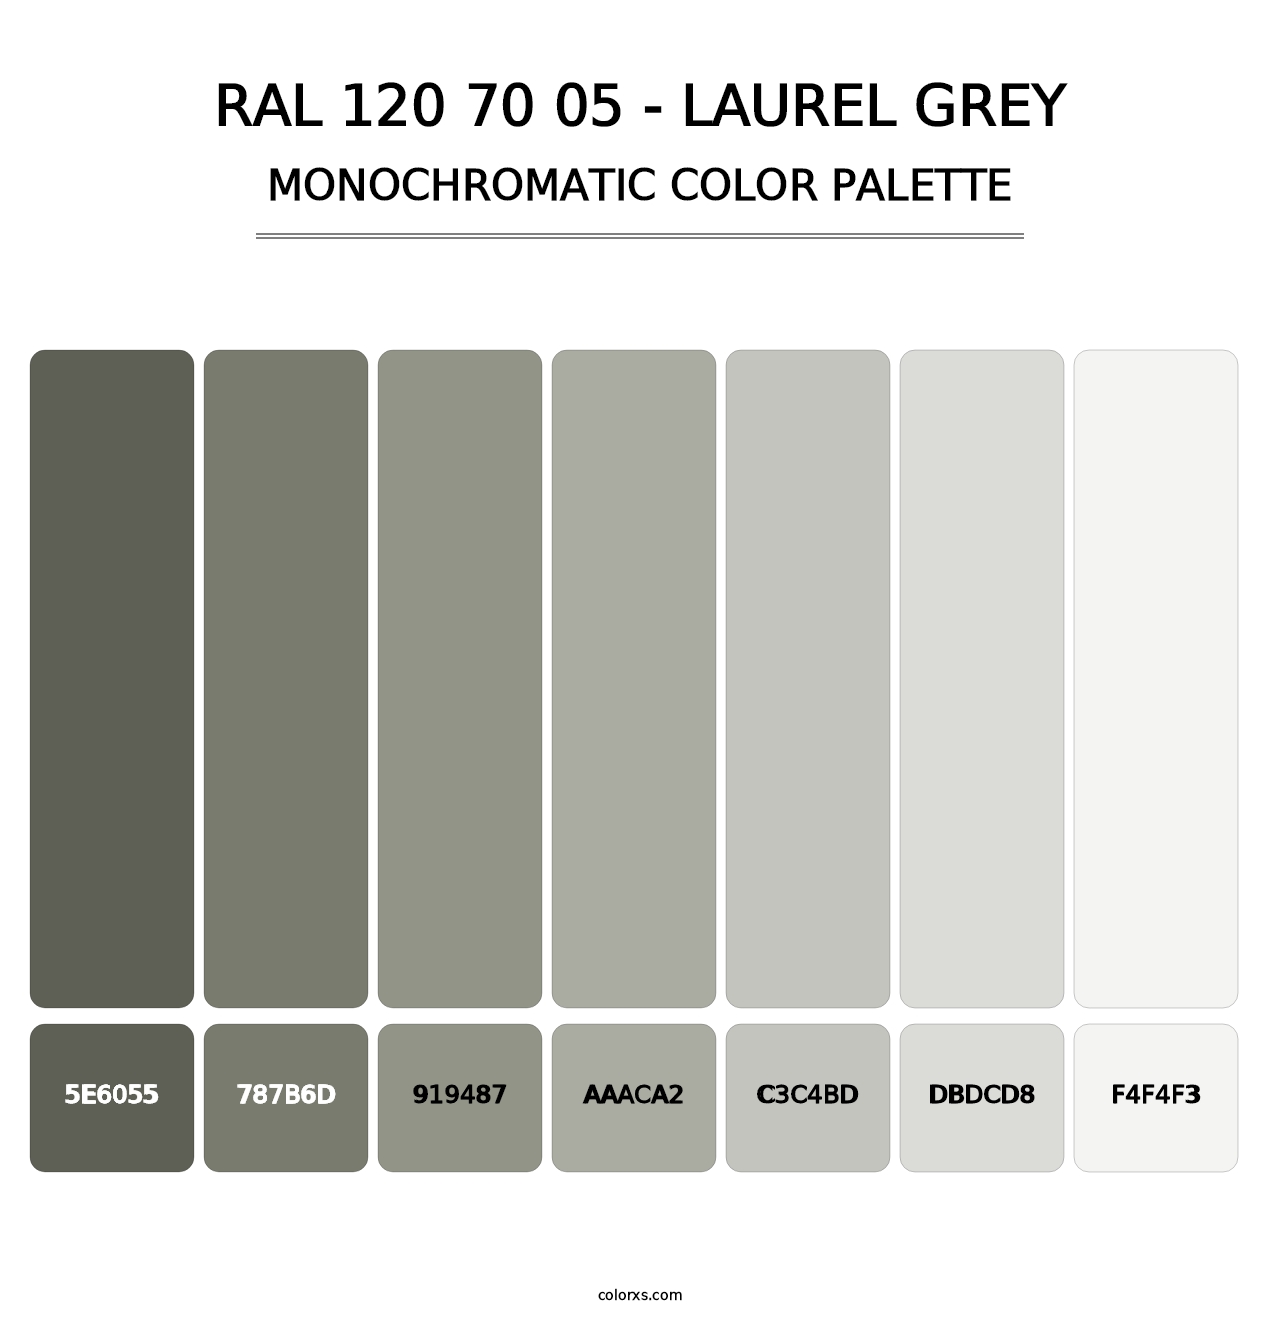 RAL 120 70 05 - Laurel Grey - Monochromatic Color Palette